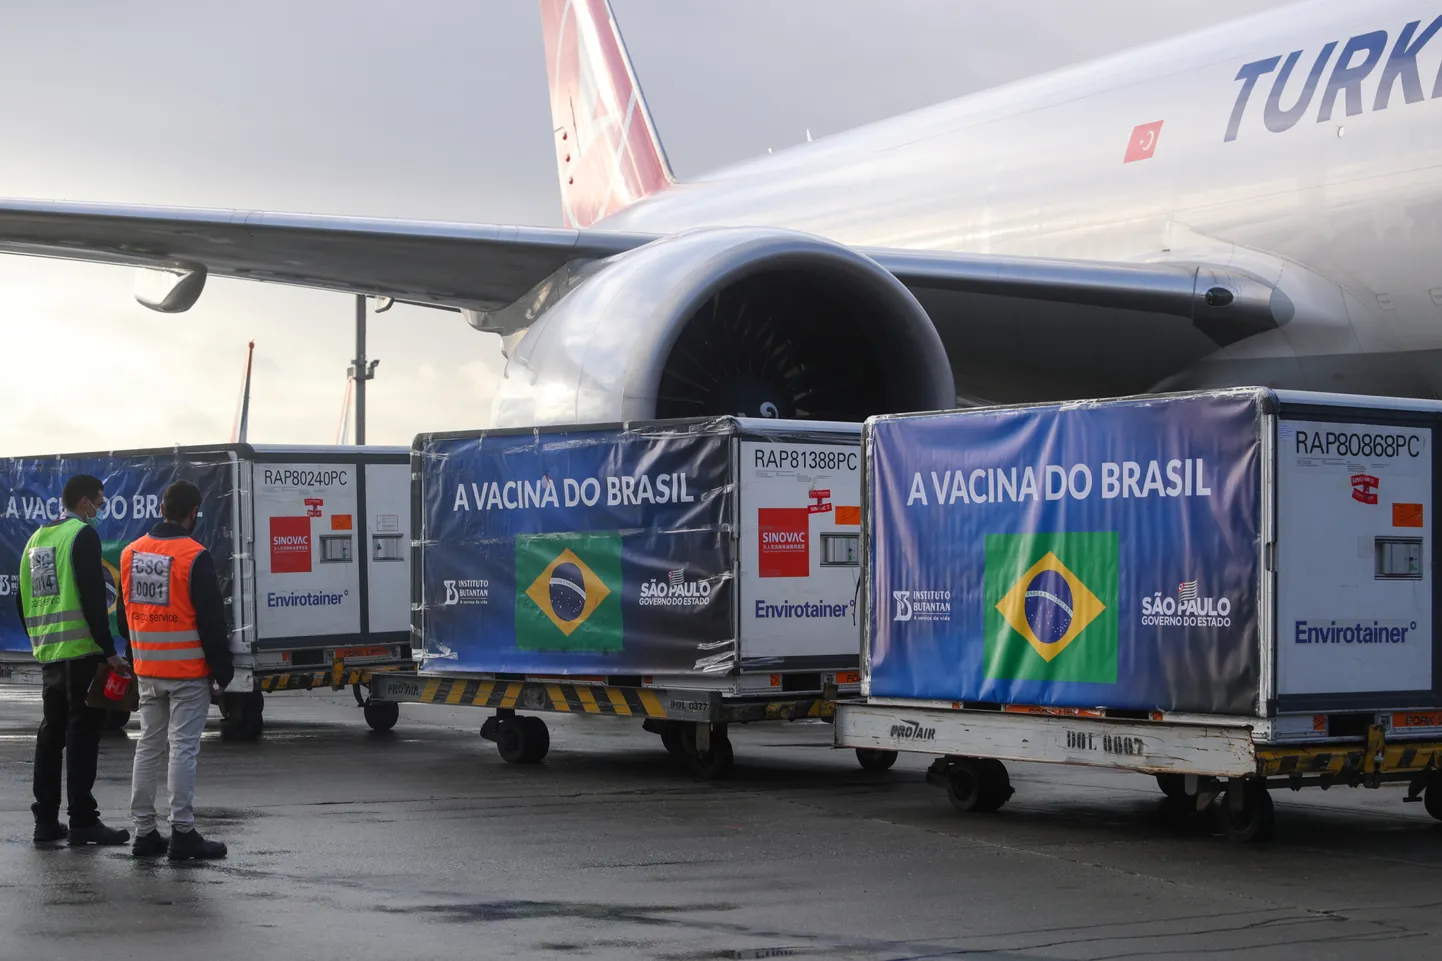 Китайская вакцина Sinovac  прибыла в Бразилию.